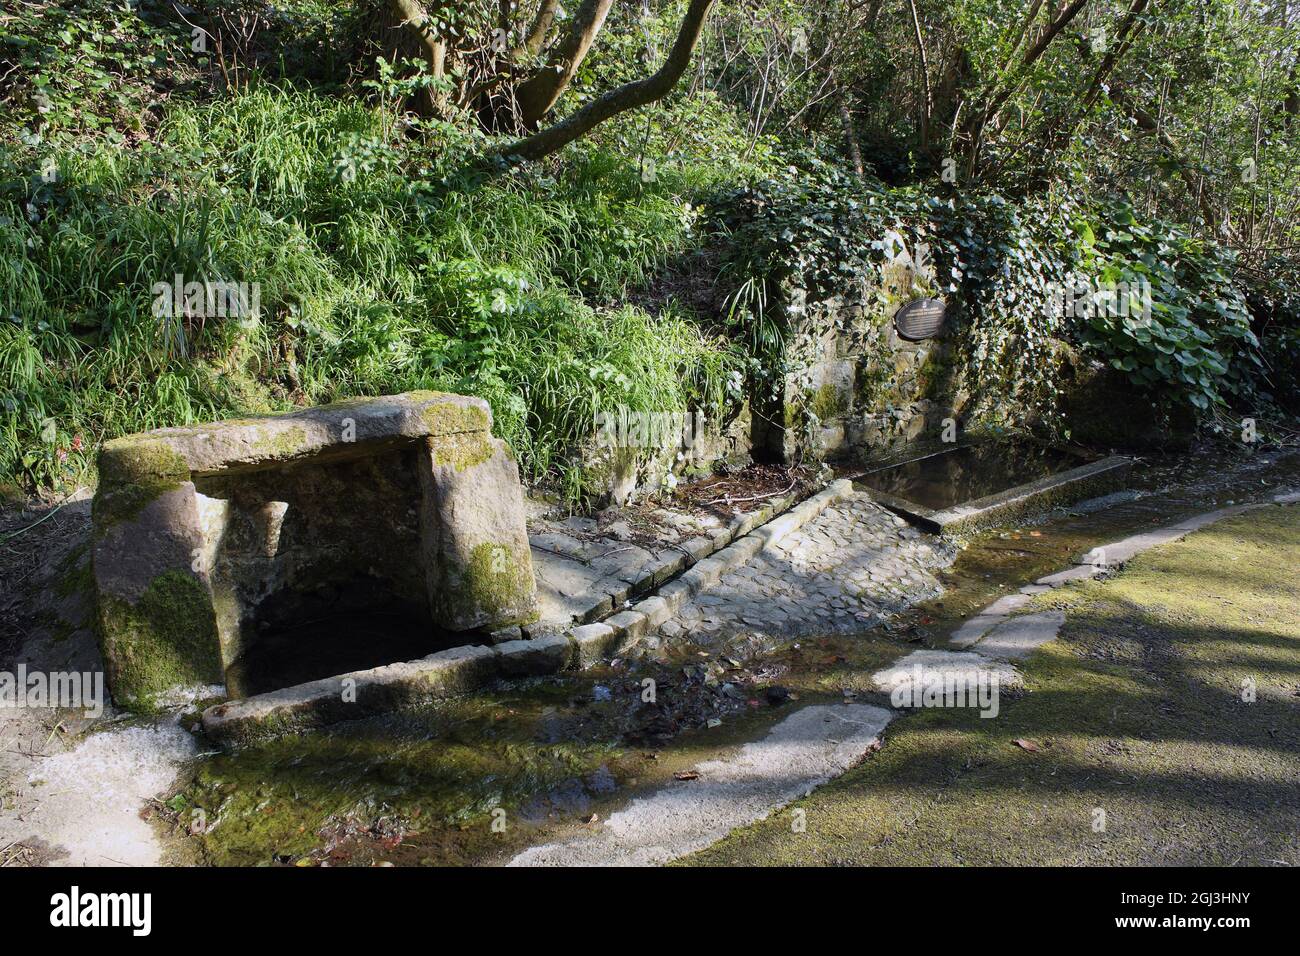 Isole della Manica britanniche. Guernsey. Sentiero della scogliera vicino a Moulin Huet Bay. Courtes Fallaizes - Abreveur et Fontaine. Foto Stock